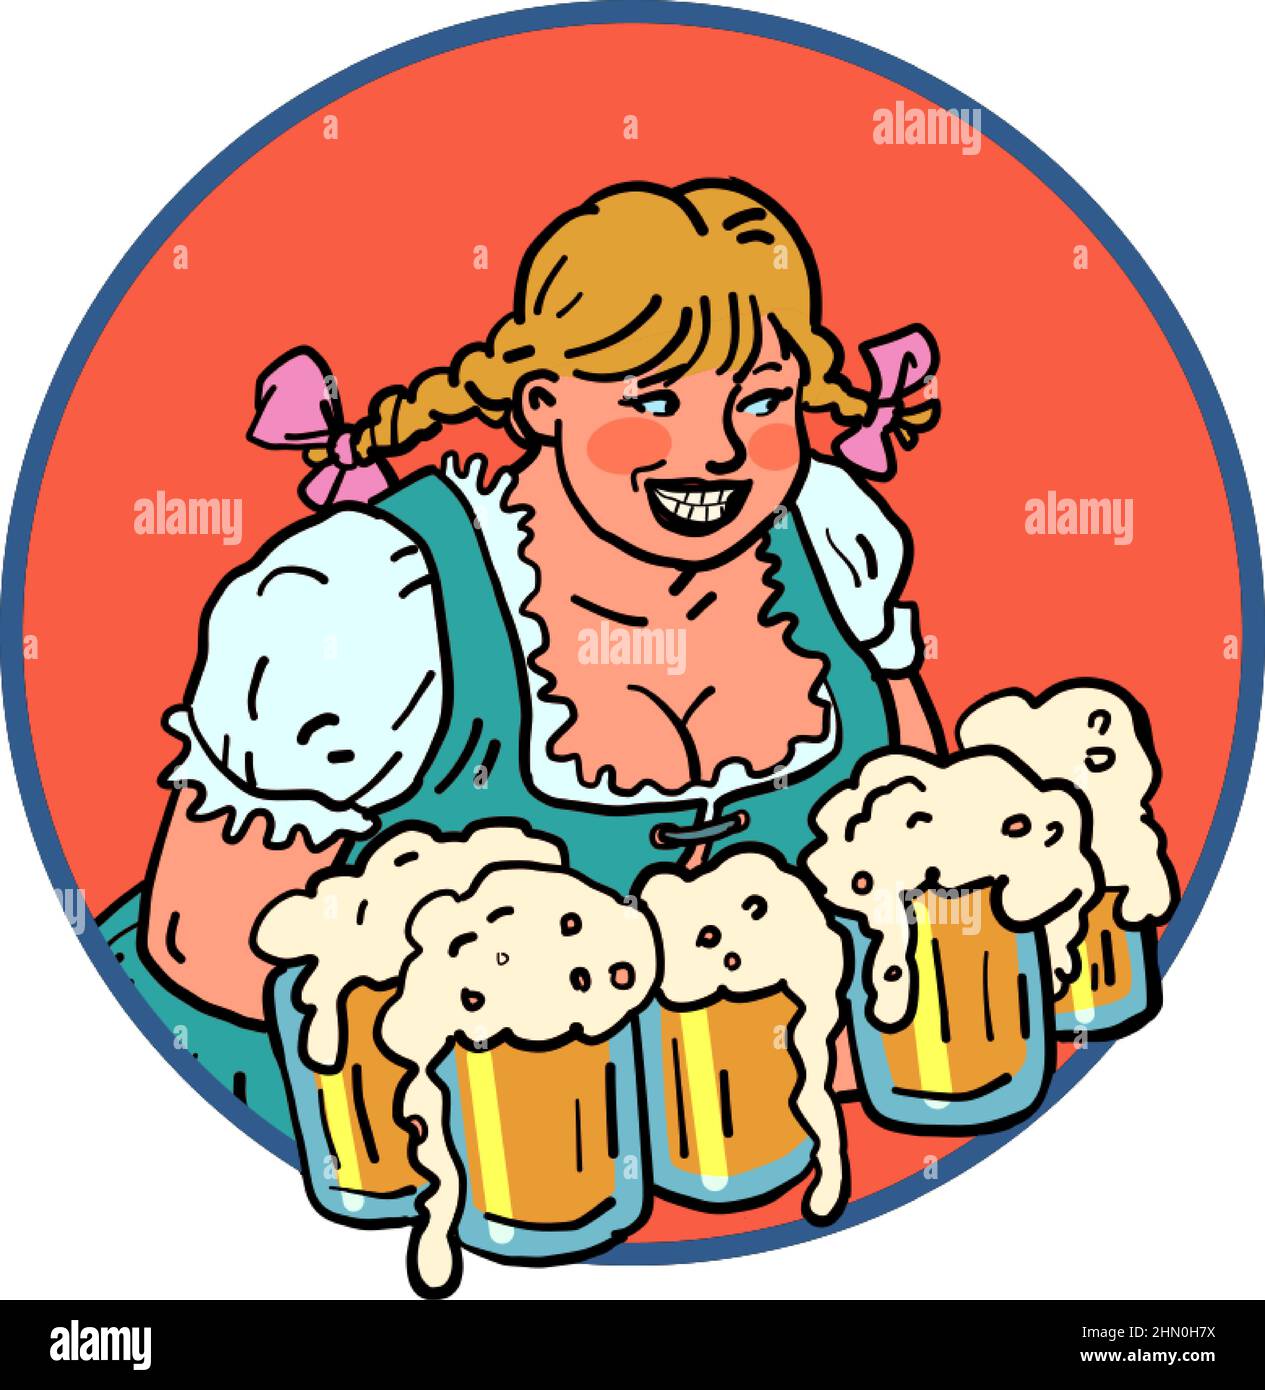 Fête de la bière, oktoberfest. La serveuse est une jeune femme avec des tasses de bière dans des vêtements allemands nationaux Illustration de Vecteur